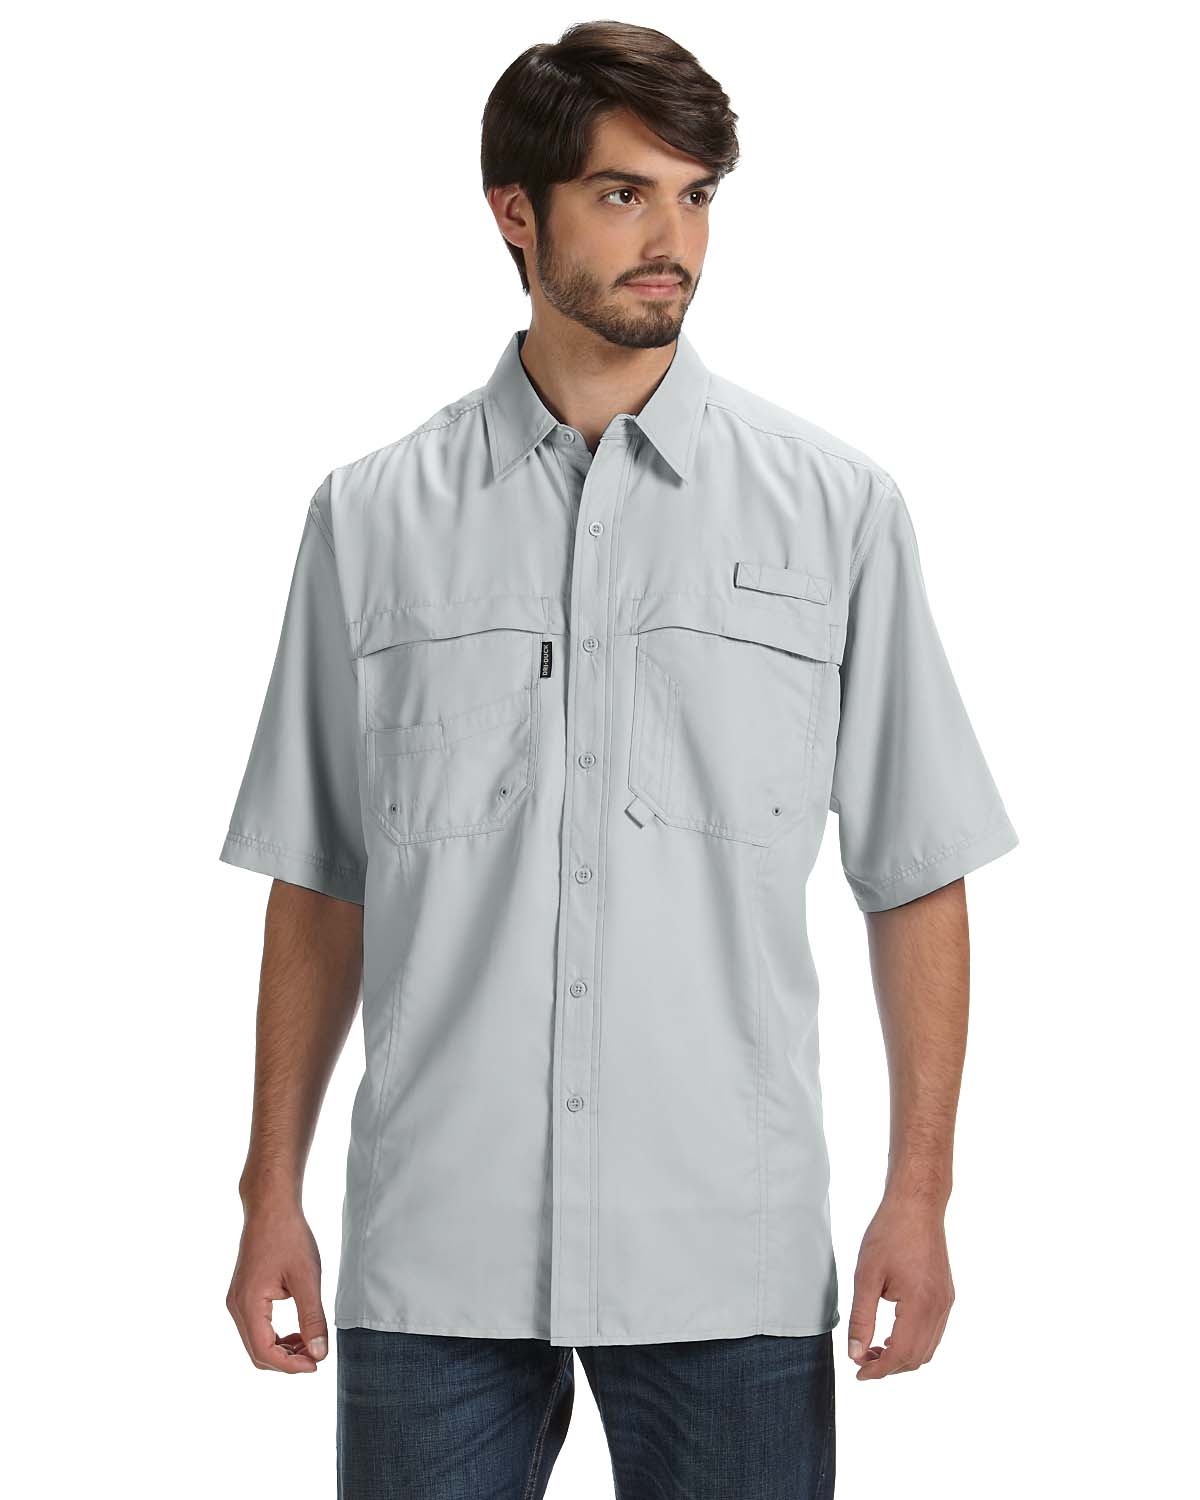 Dri Duck DD4406, Men's 100% Polyester Short-Sleeve Fishing Shirt